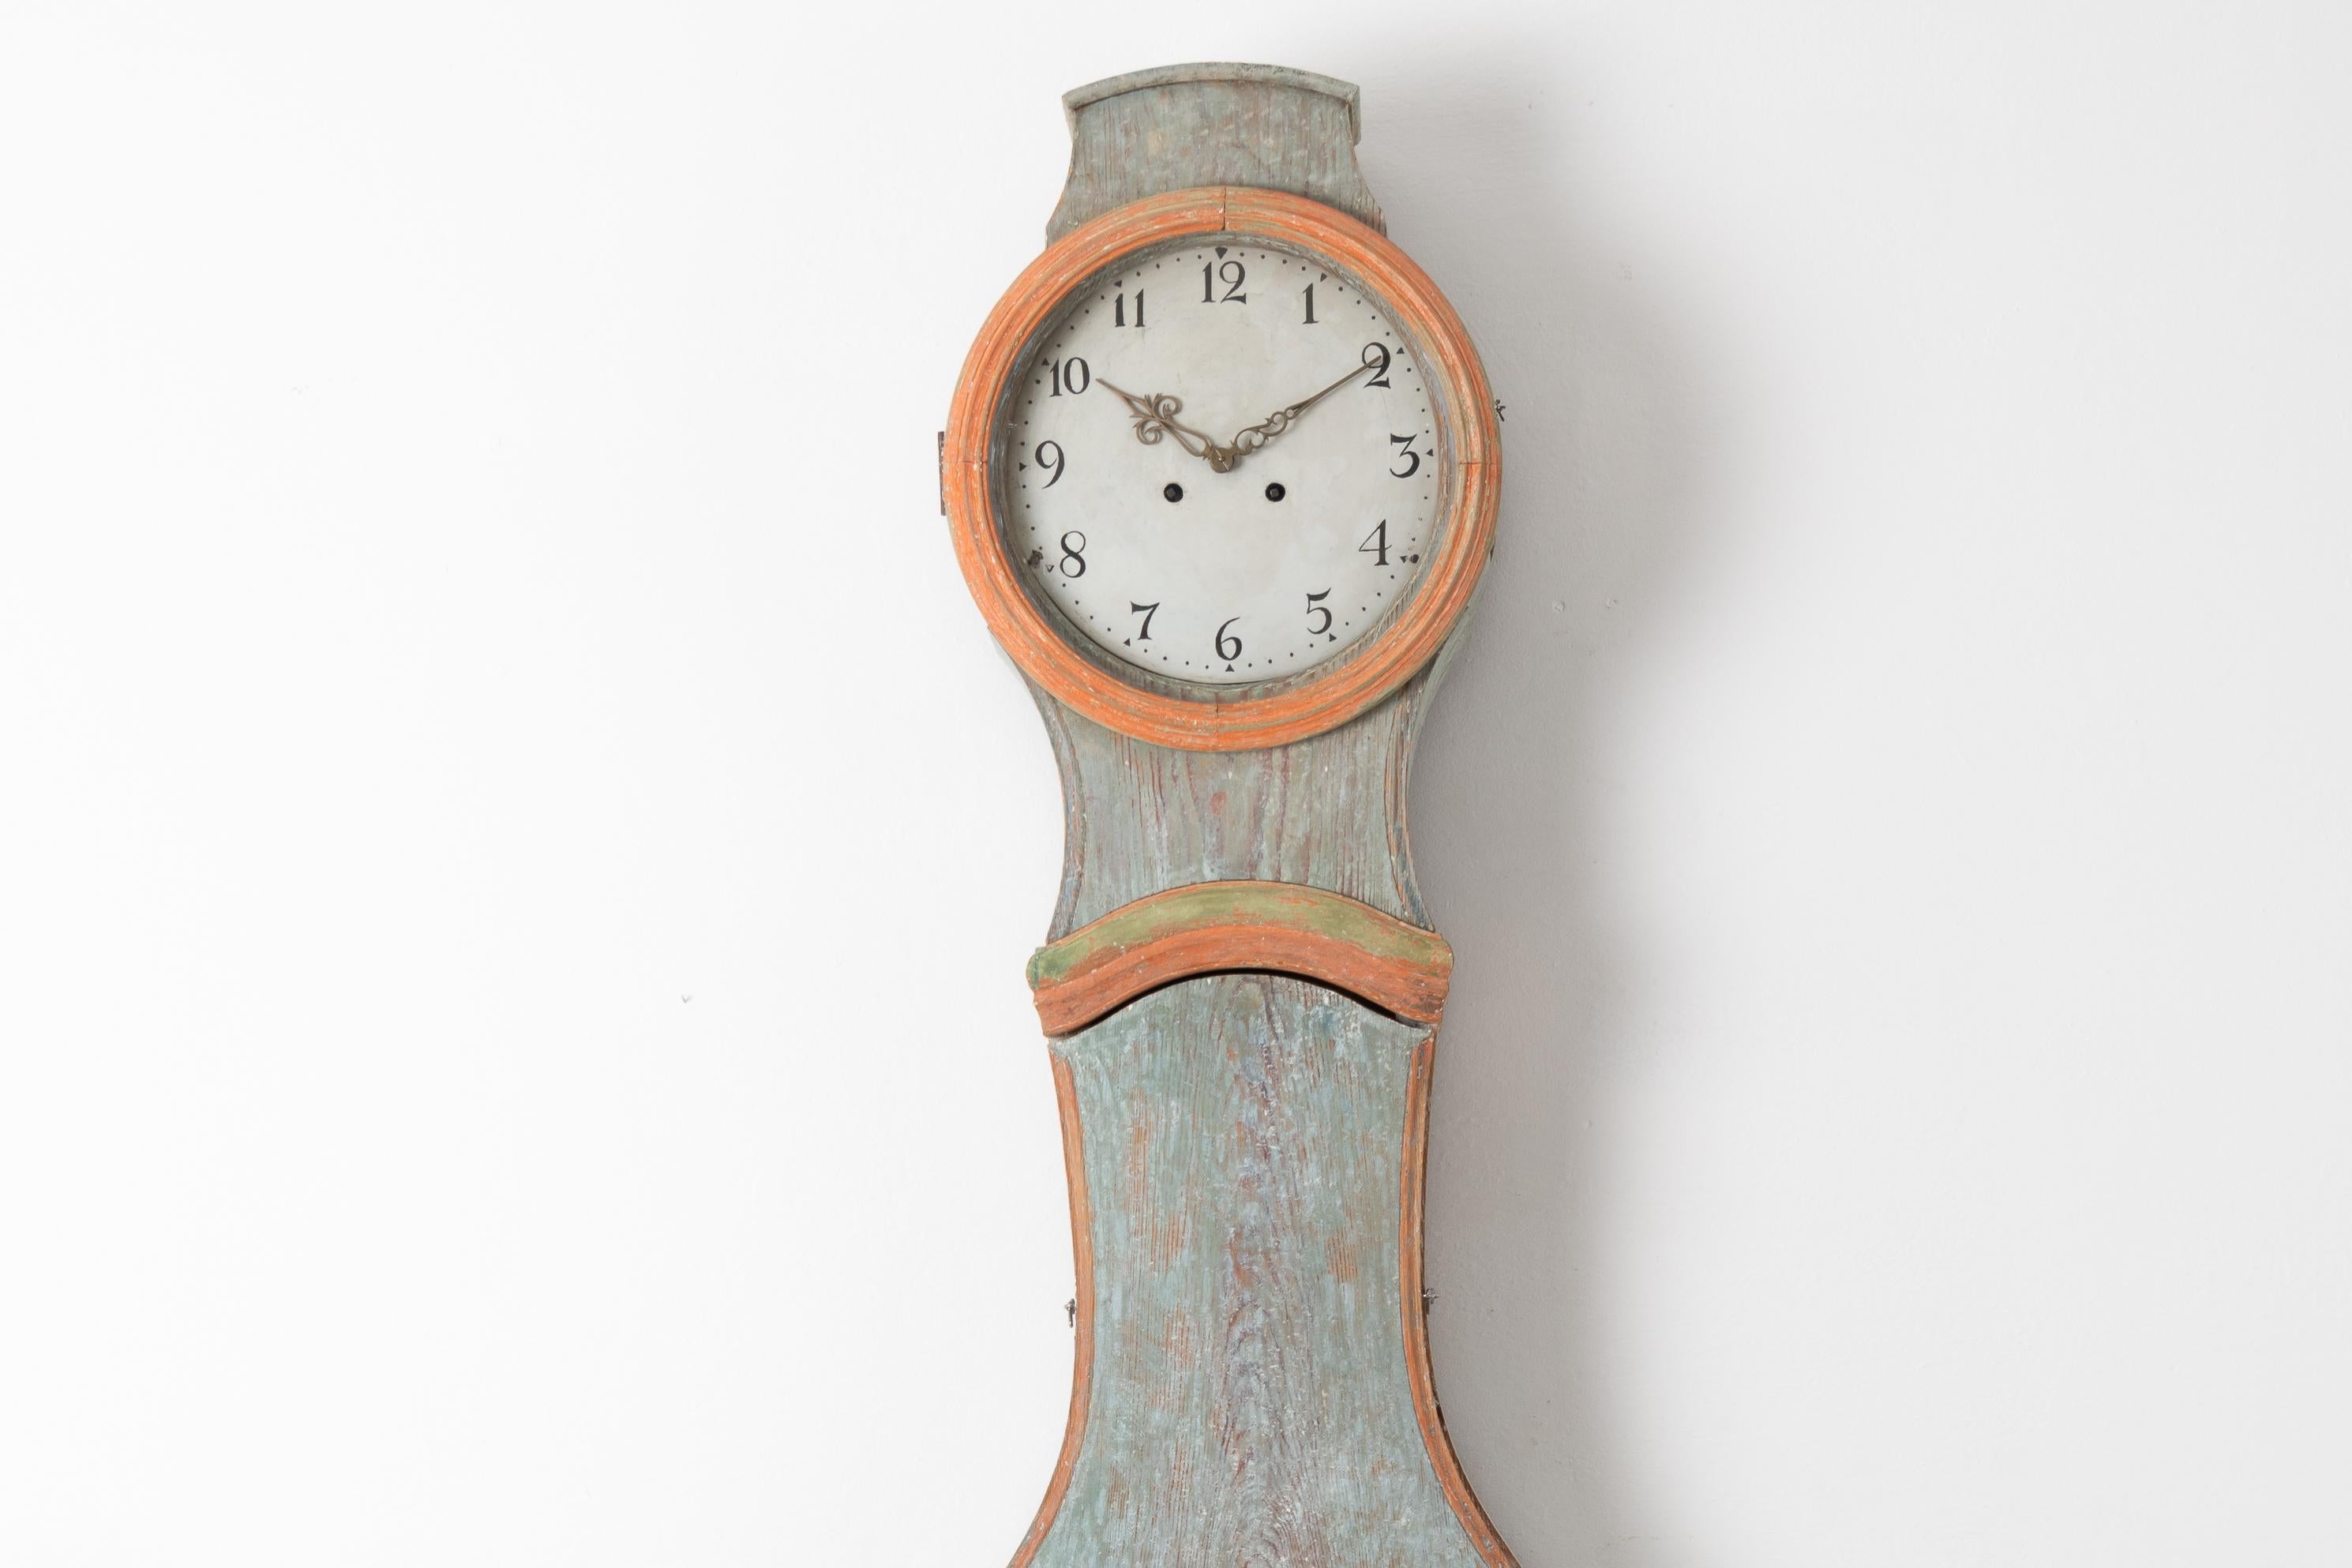 Pendule à long boîtier classique rococo de Suède du Nord, datant de la première moitié du XIXe siècle, vers 1820-1830. L'horloge a une bonne taille et une forme rococo classique. Fabriqué en pin peint avec une peinture d'origine grattée à sec. La